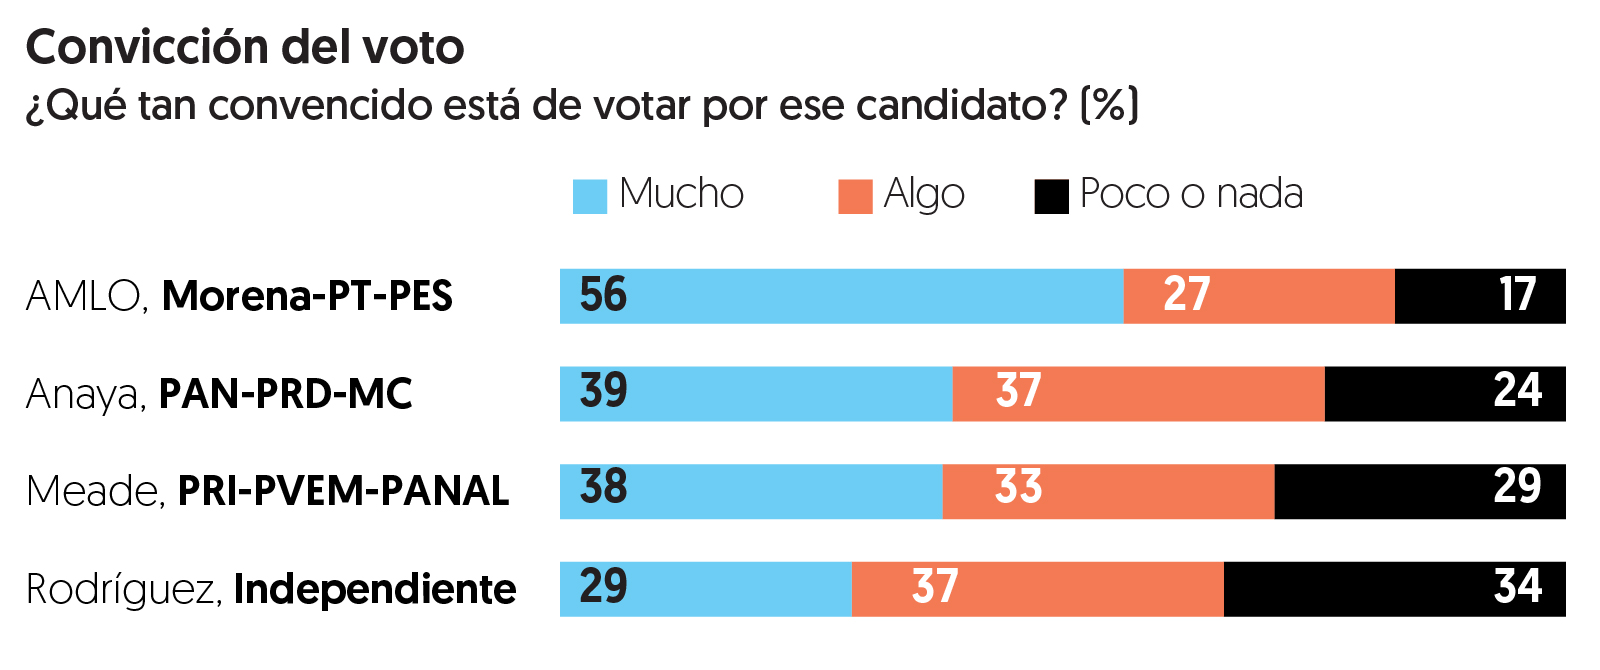 Encuesta de preferencias electorales de El Financiero. Publicación: 4 de junio de 2018.